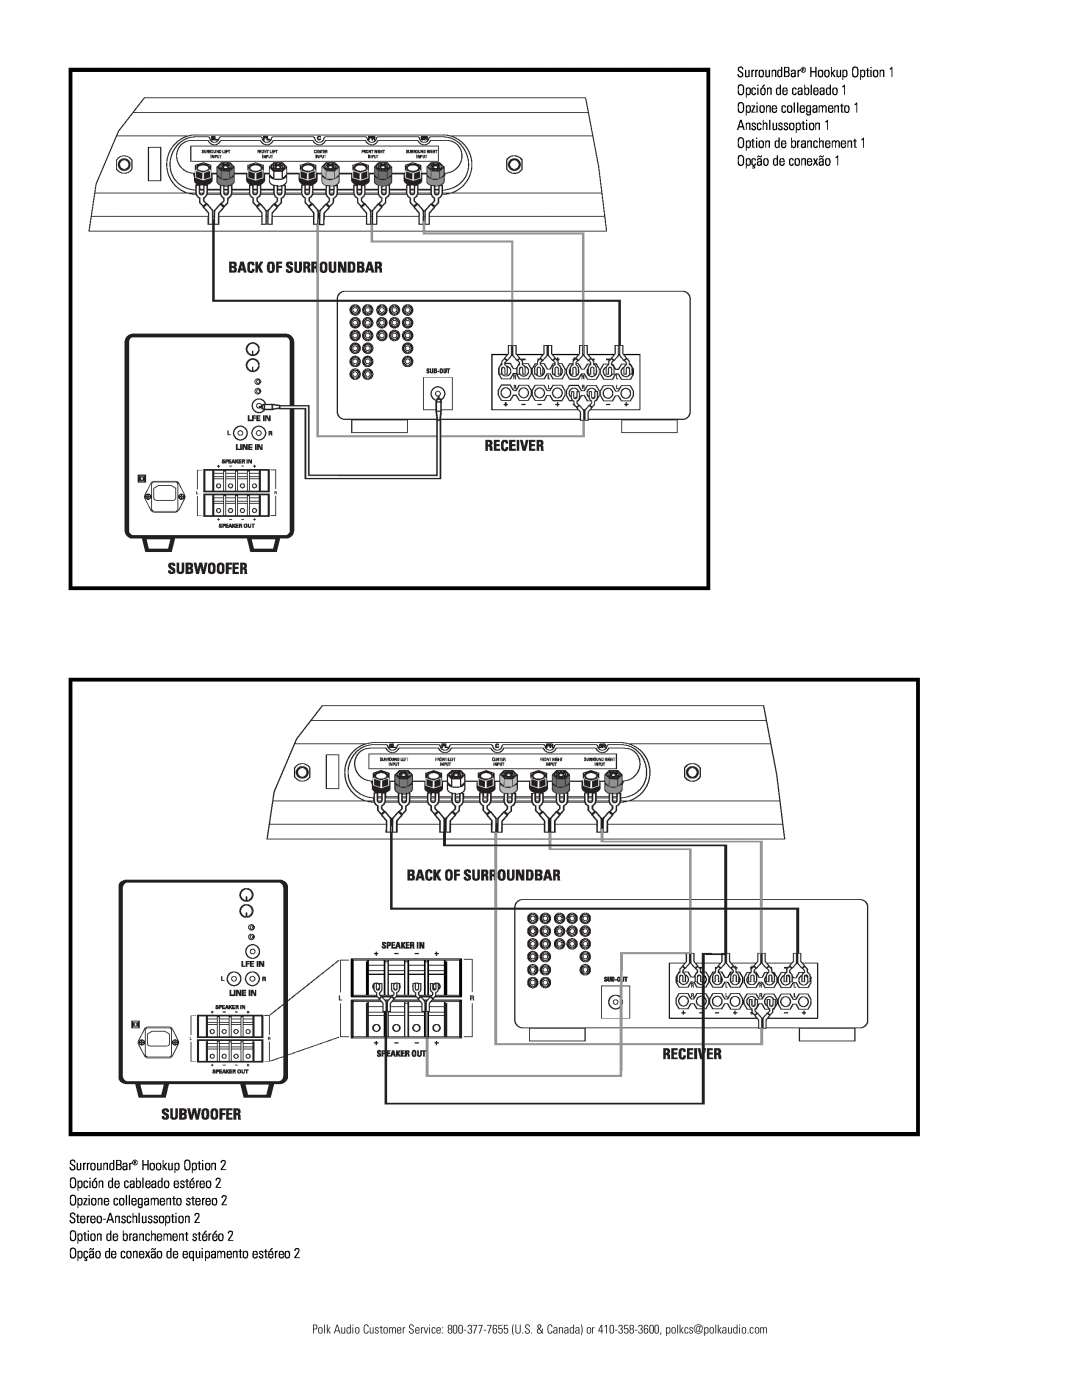 Polk Audio PSW111 owner manual SurroundBar Hookup Option Opción de cableado, Opzione collegamento Anschlussoption 